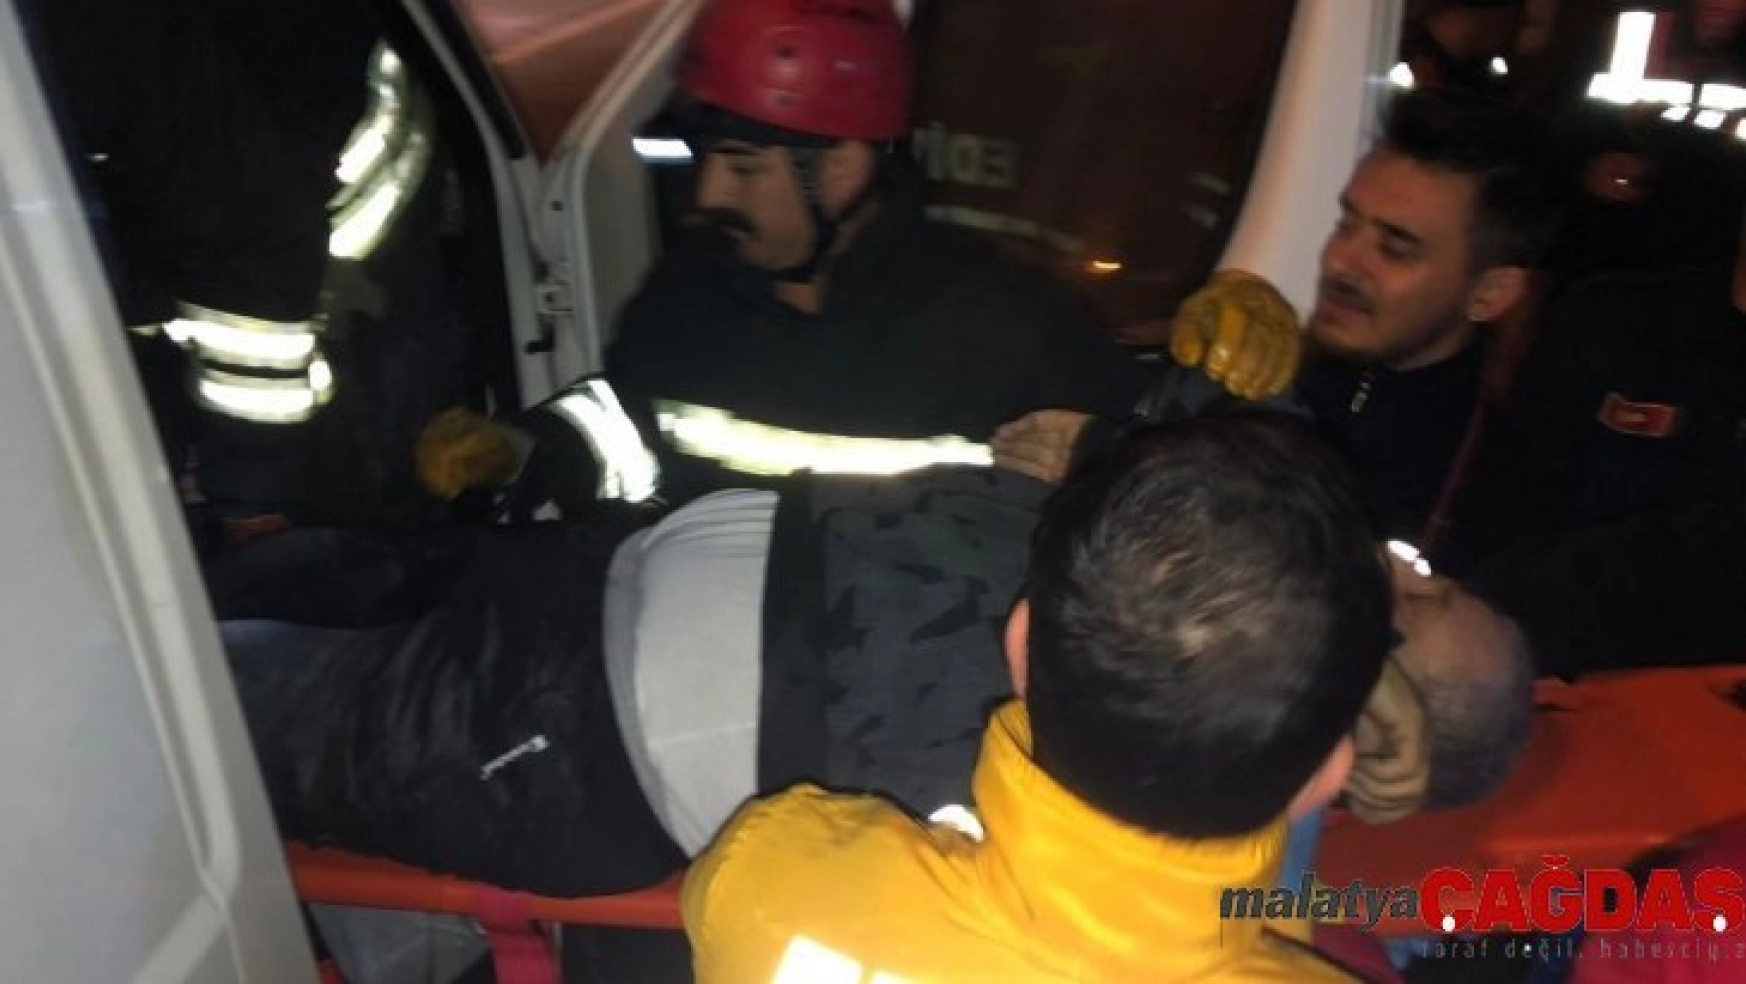 Edirne'de kamyonet ile yanıcı madde yüklü tanker çarpıştı:1 ölü